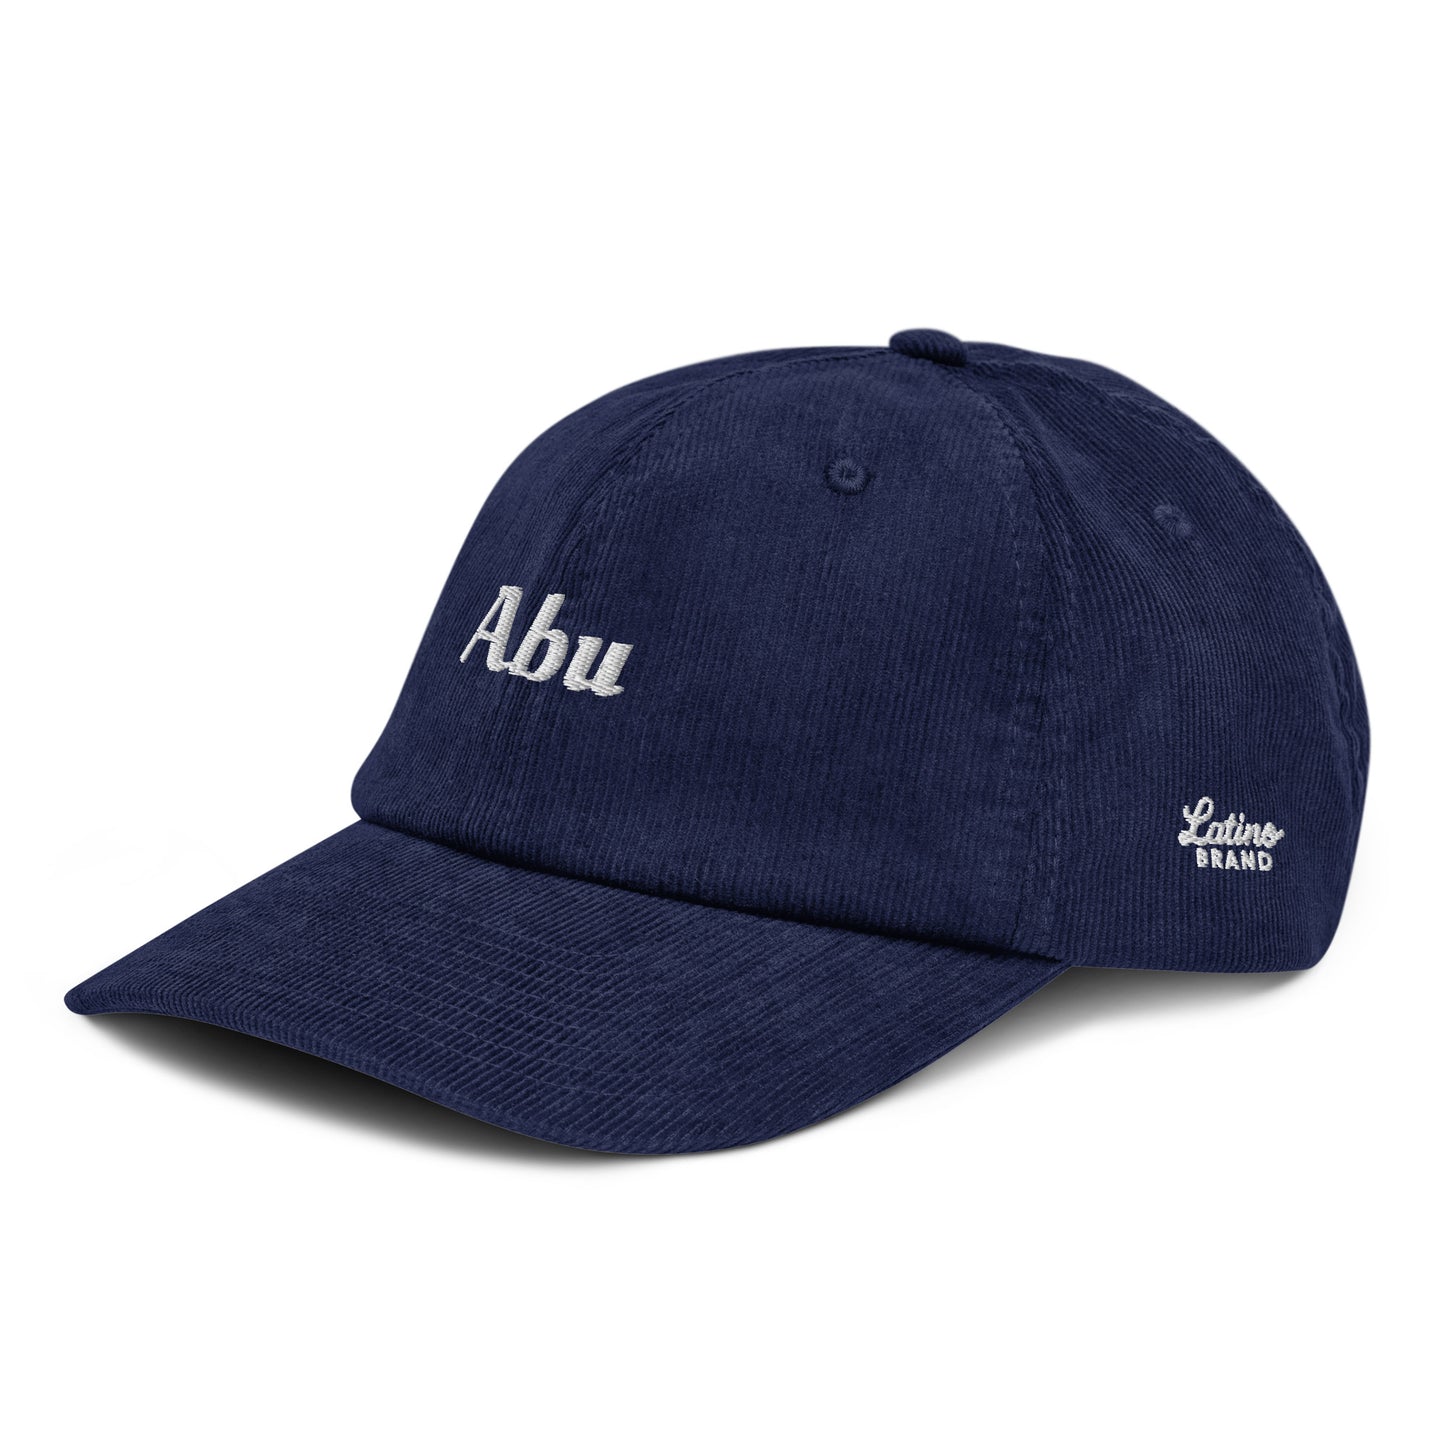 Abu Corduroy Hat